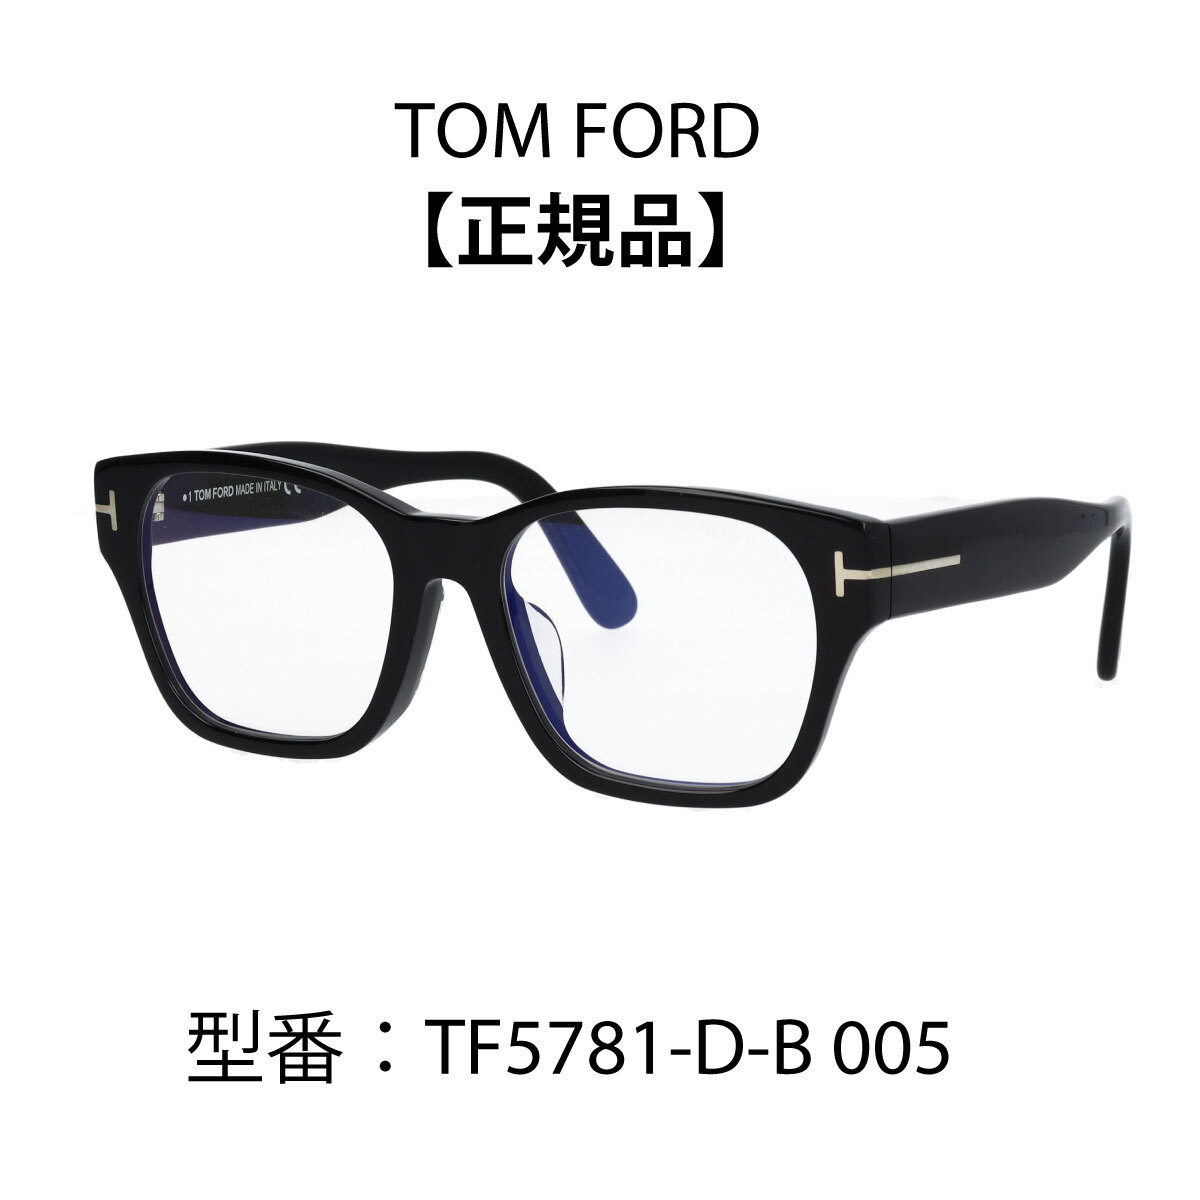 TOM FORD トムフォード メガネ ウェリントン 眼鏡 ブルーライトカットメガネ FT5781-D-B/V (TF5781-D-B 005) アジアンフィット 001 005 052